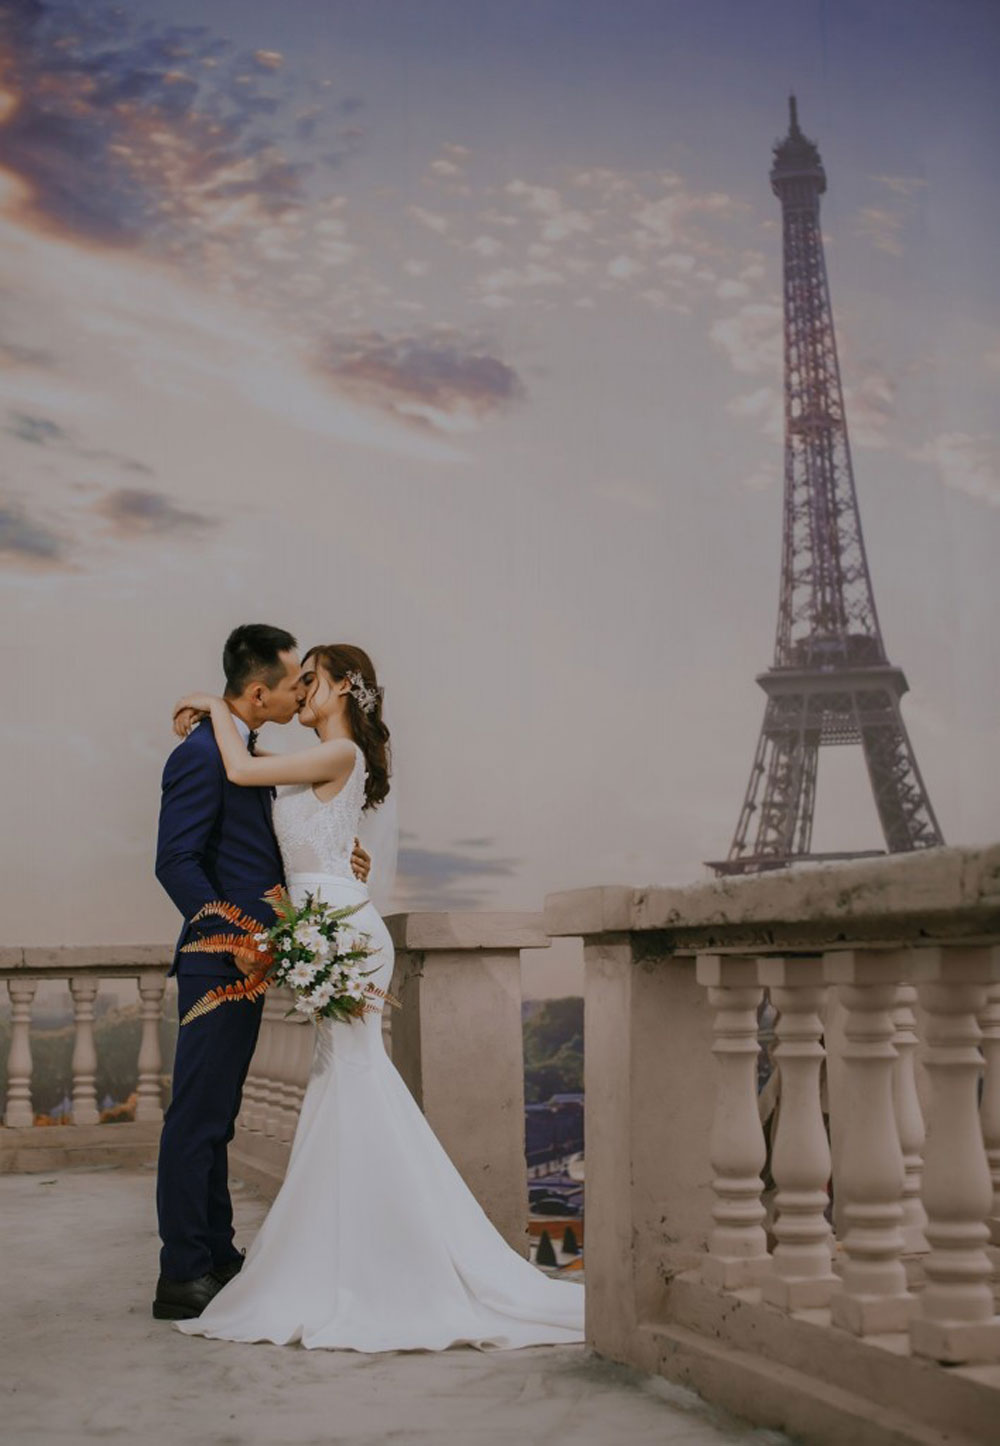 Tháp Eiffel – Paris tráng lệ giữa lòng Sài Gòn